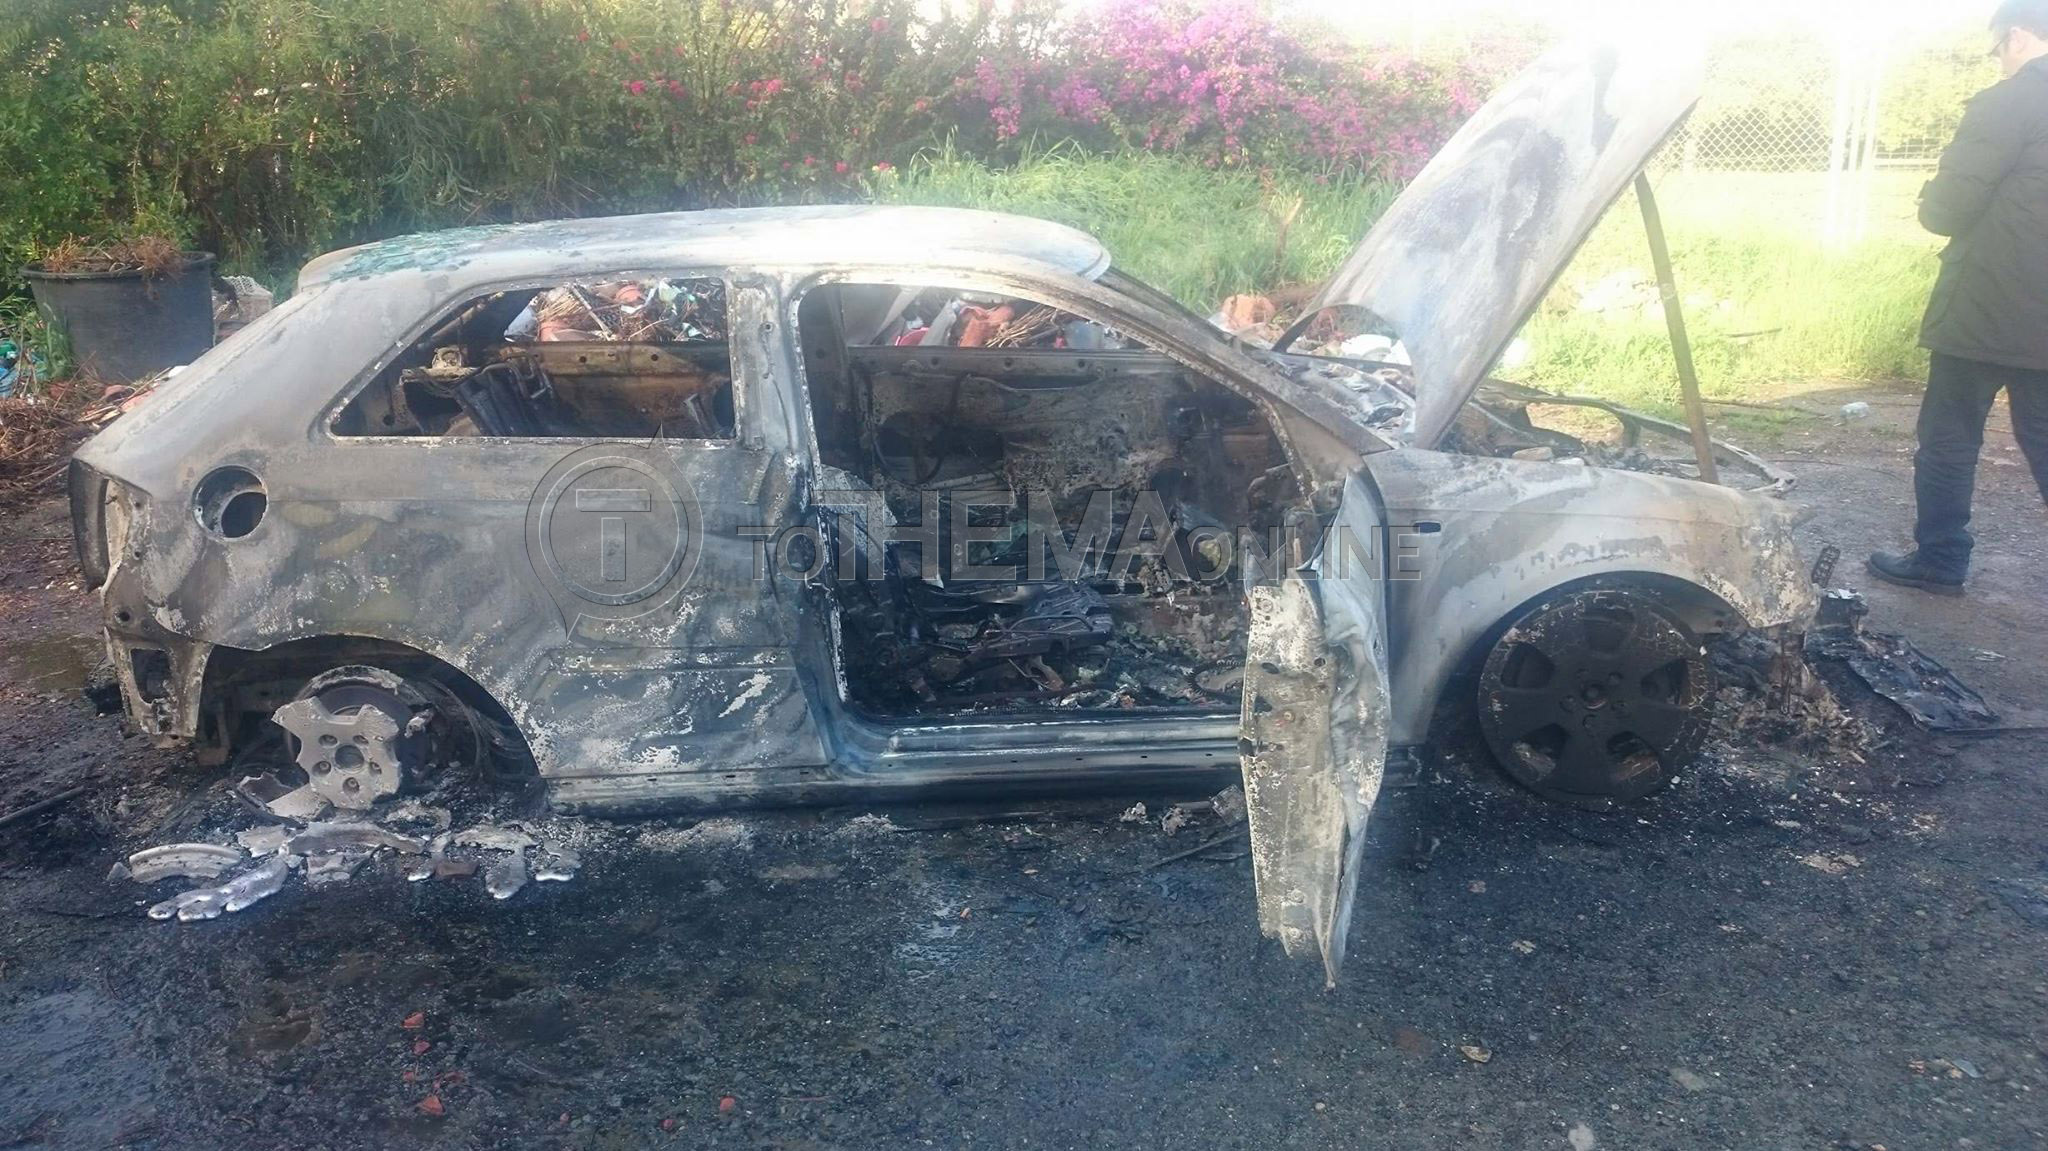 ΓΕΡΜΑΣΟΓΕΙΑ - ΕΜΠΡΗΣΜΟΣ: Καταστράφηκε ολοσχερώς το όχημα – ΦΩΤΟΓΡΑΦΙΕΣ